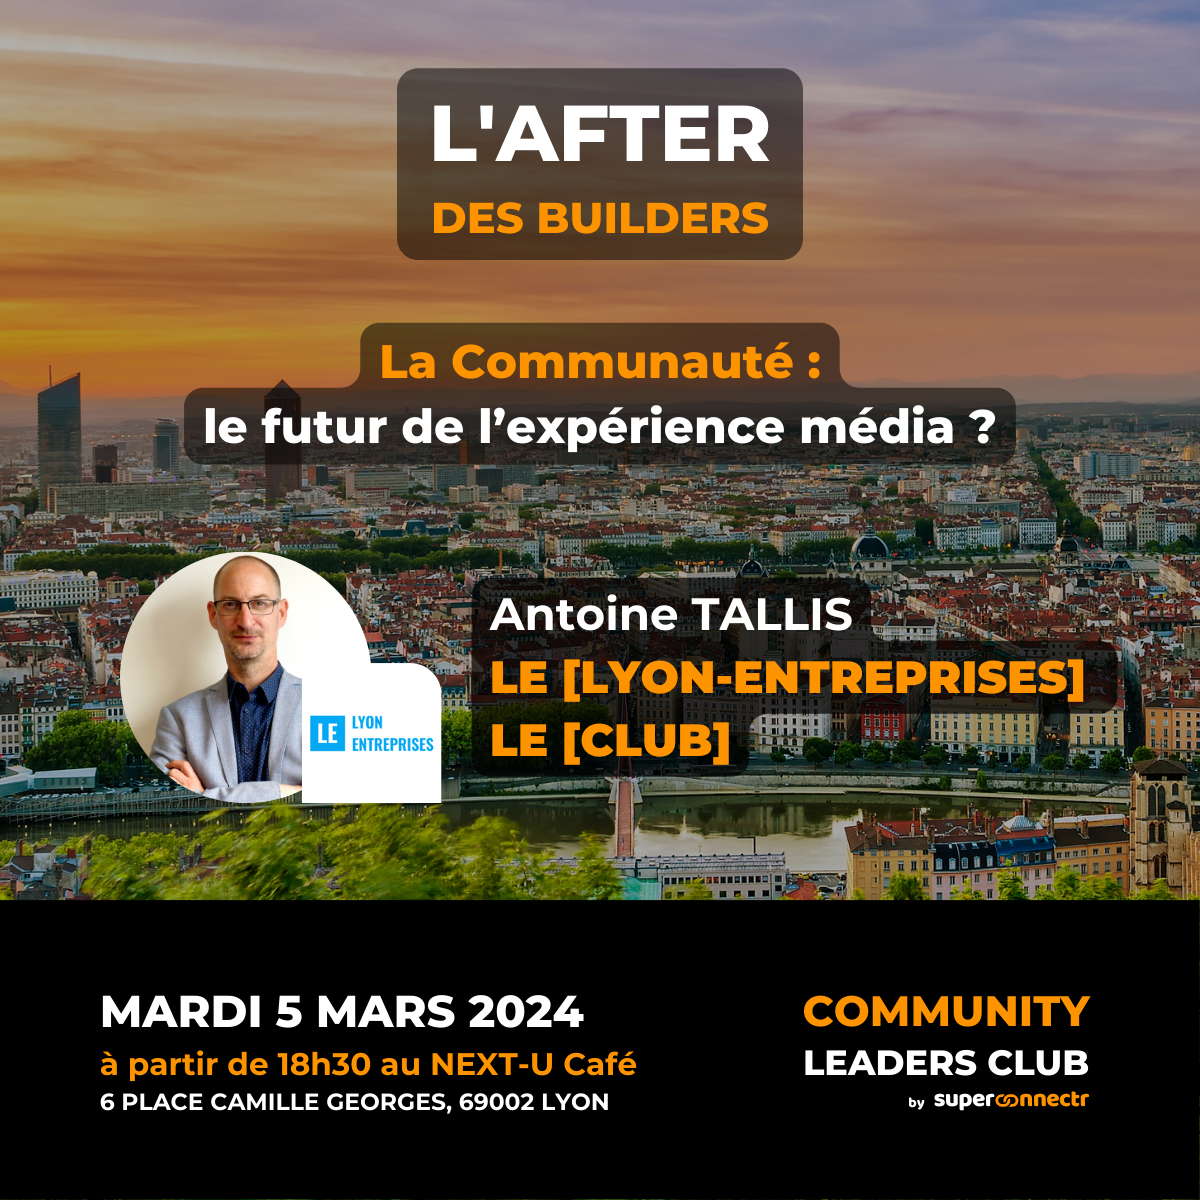 Community Leaders Club - After des Builders / La communauté : le futur de l'expérience média ?